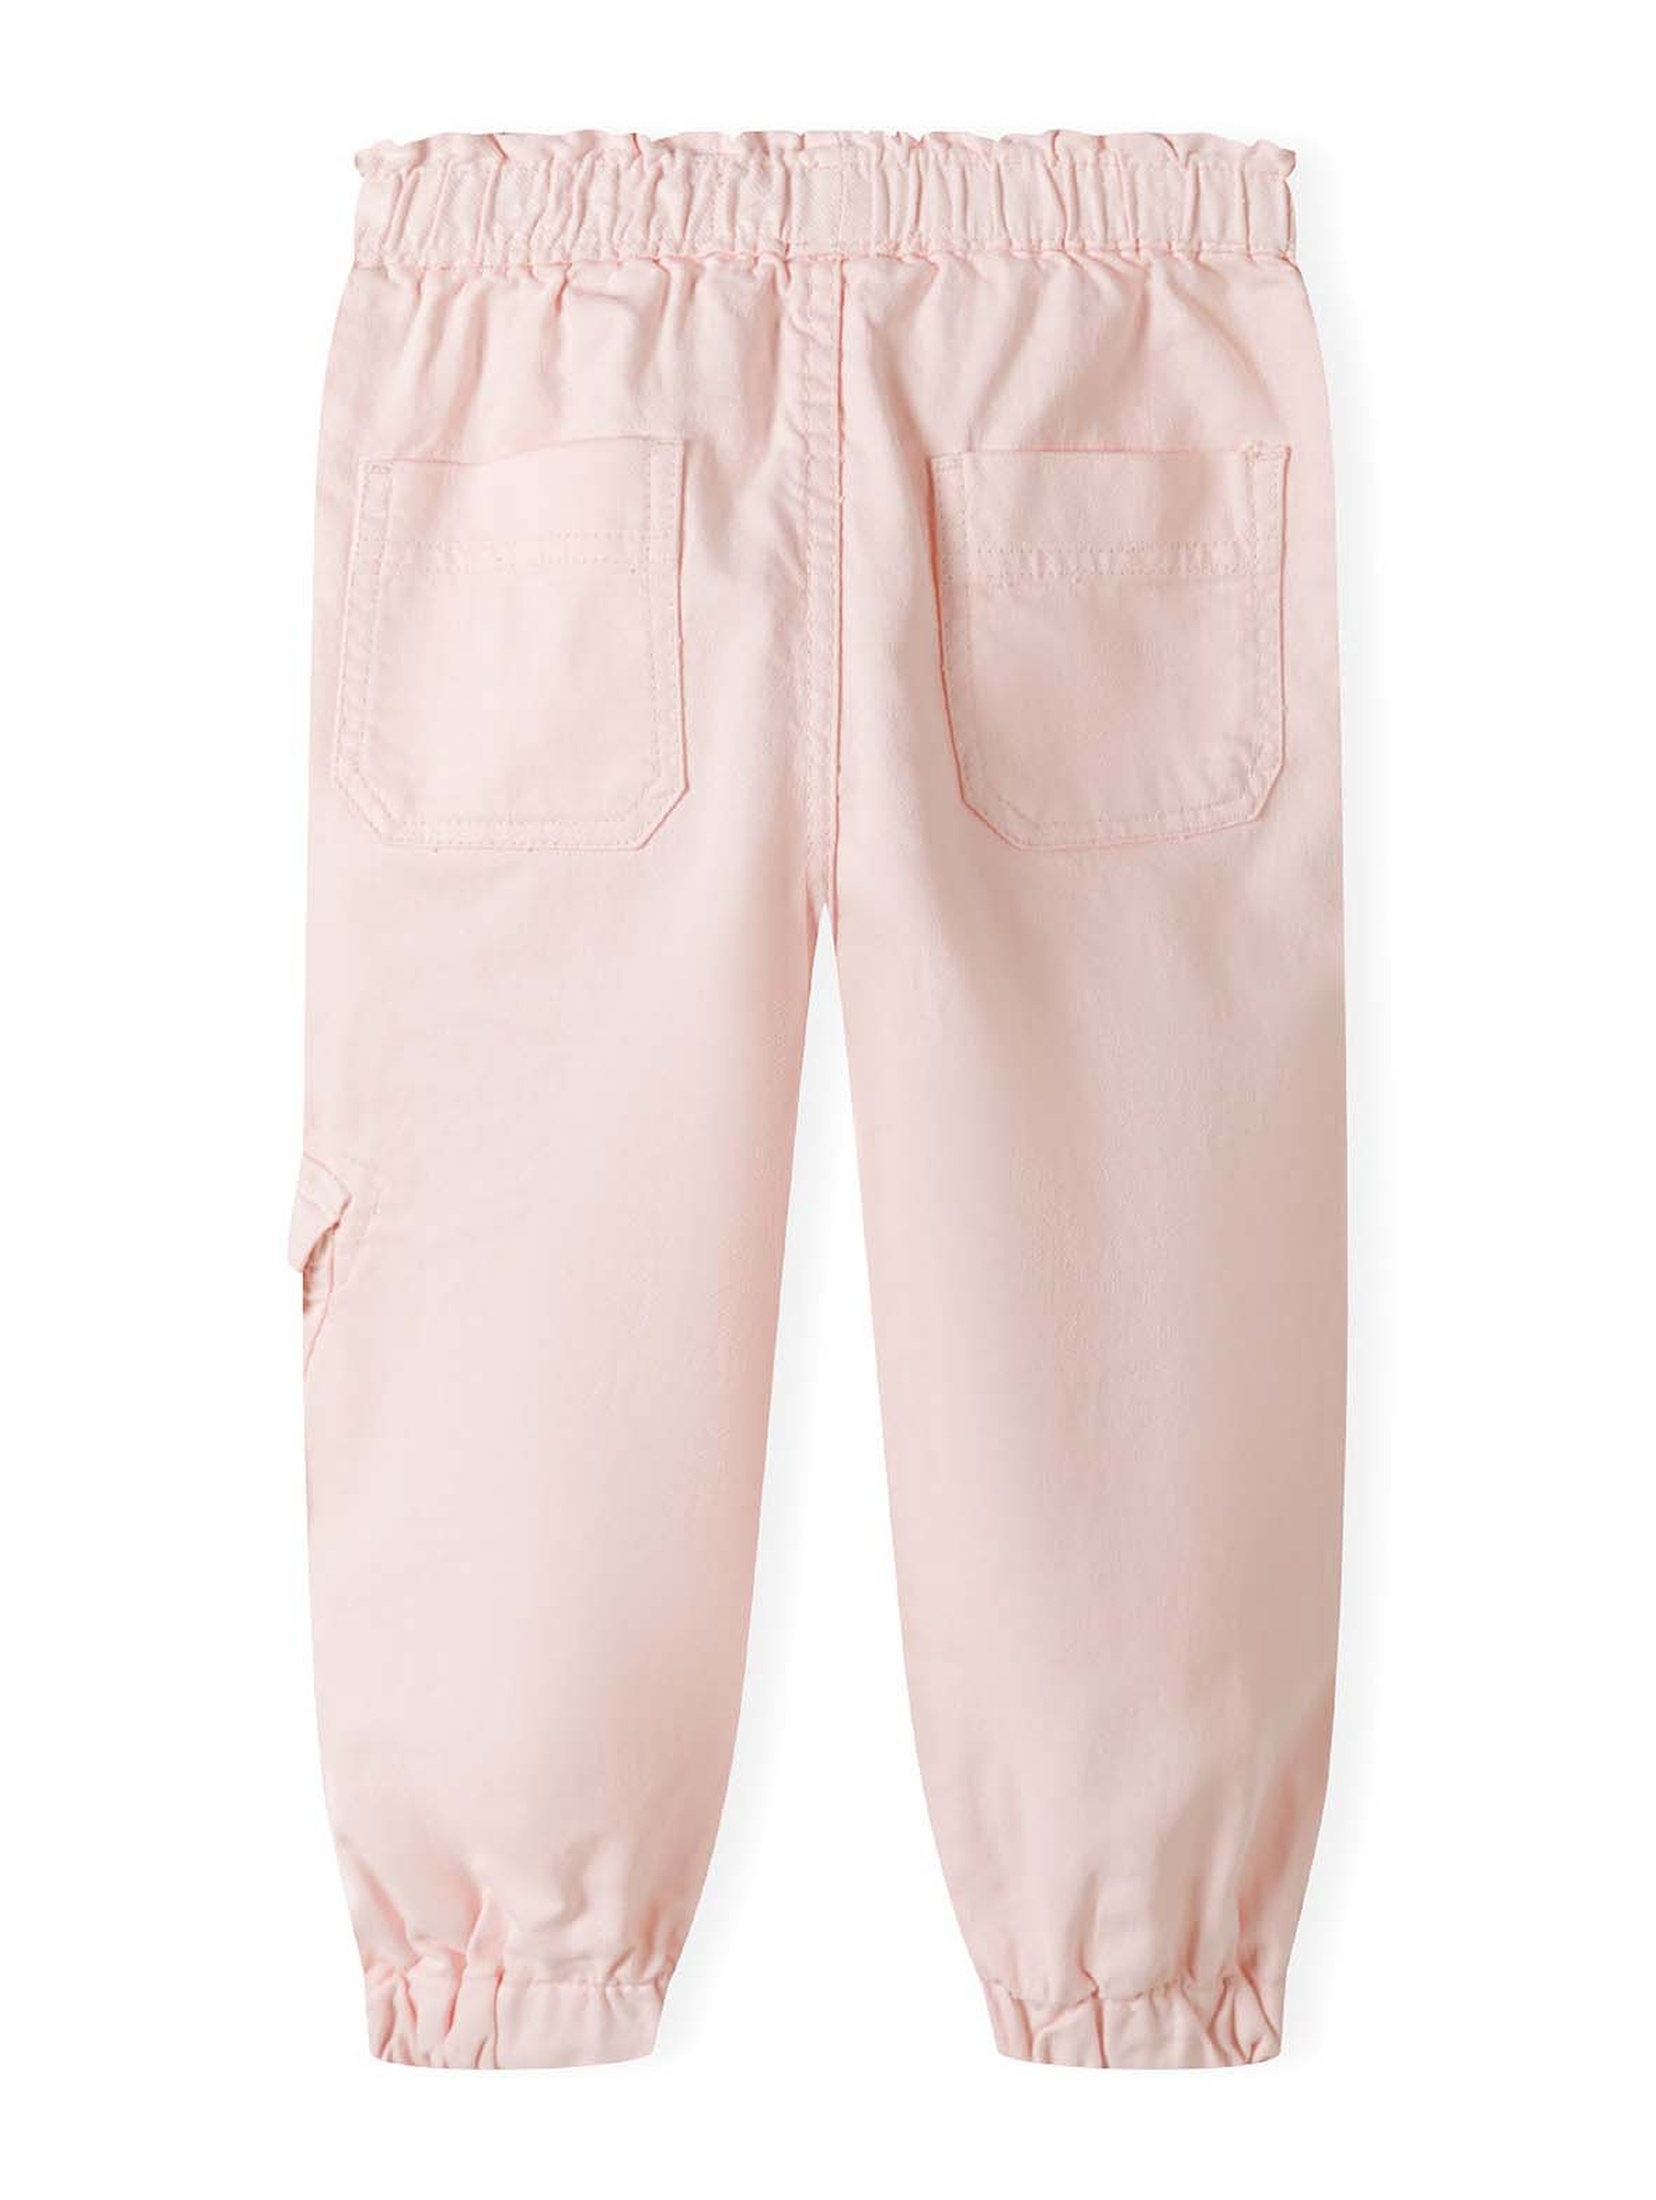 Spodnie bojówki różowe z bawełny dla małej dziewczynki